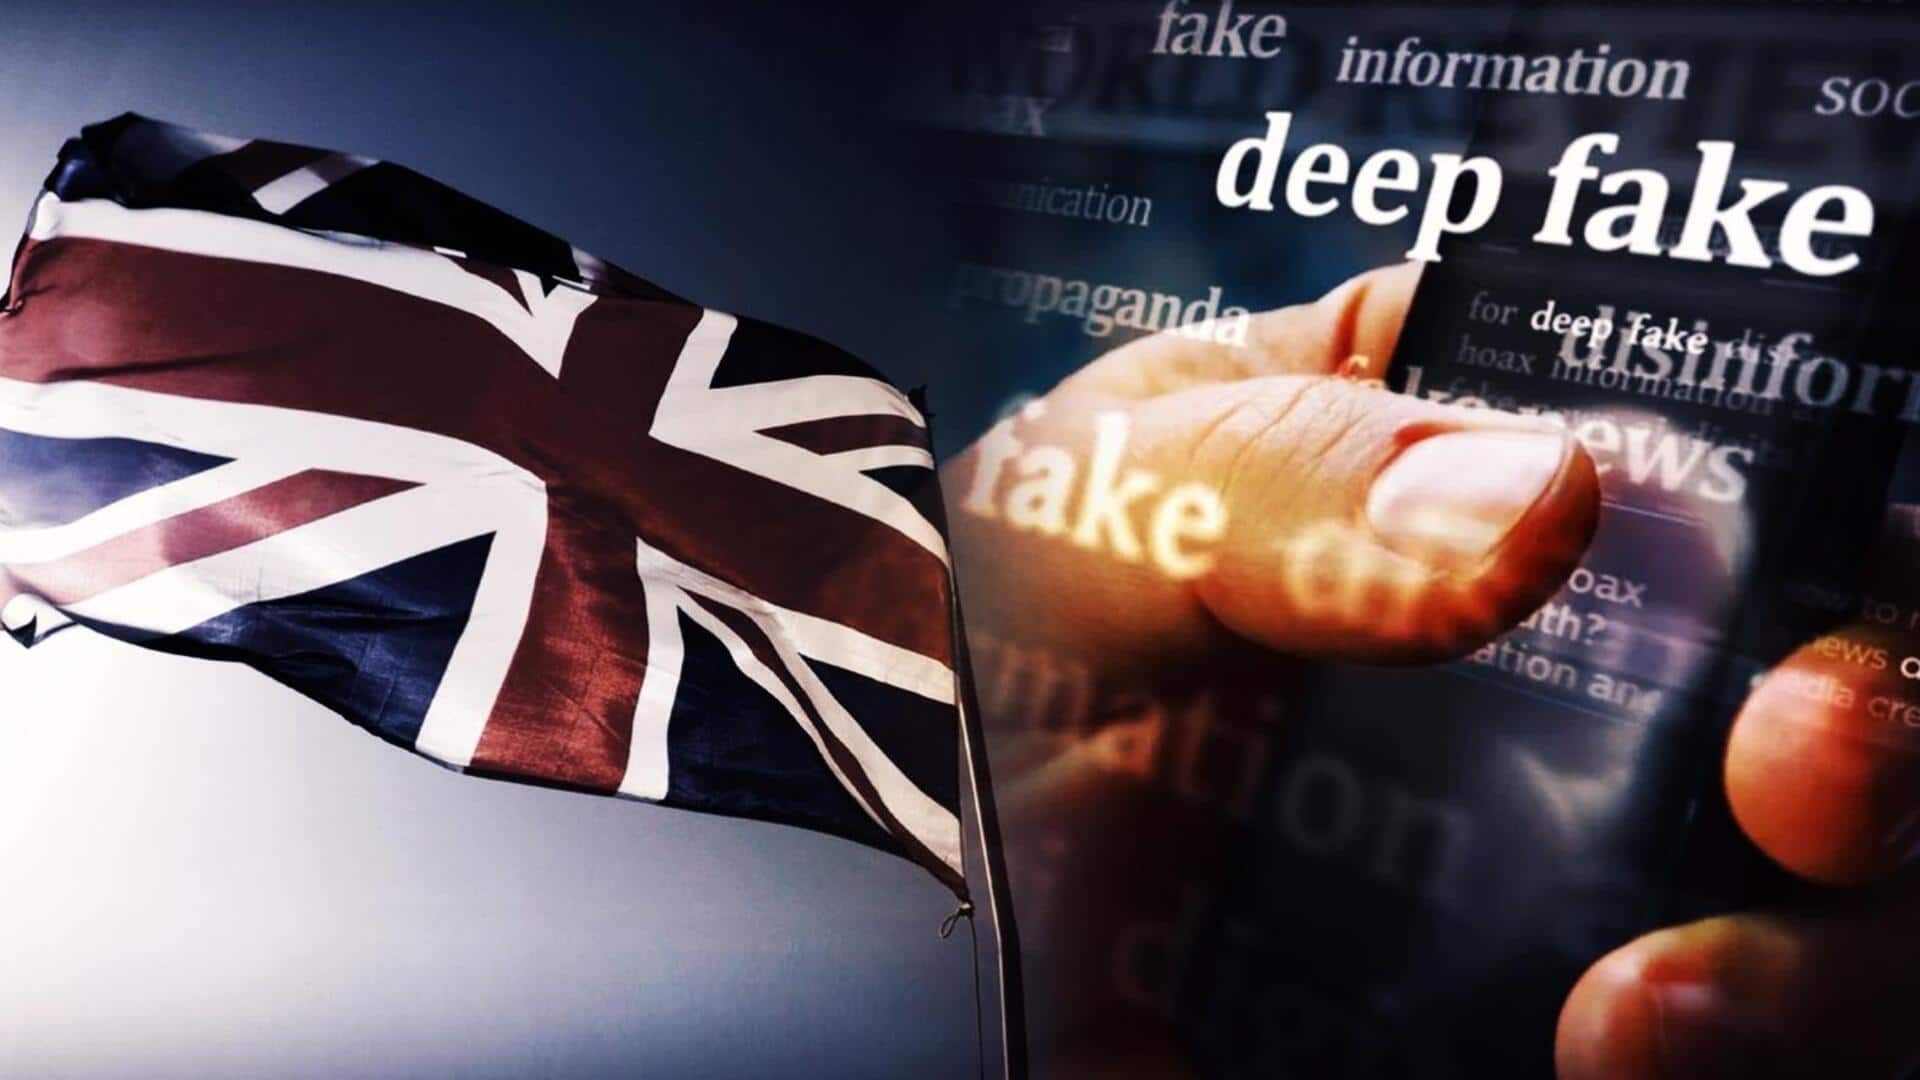 UK-Deep Fake Pictures-Videos-New Law: డీప్ ఫేక్ చిత్రాలను క్రియేట్ చేయడాన్ని నేరంగా పరిగణిస్తూ చట్టం తీసుకొచ్చిన బ్రిటన్